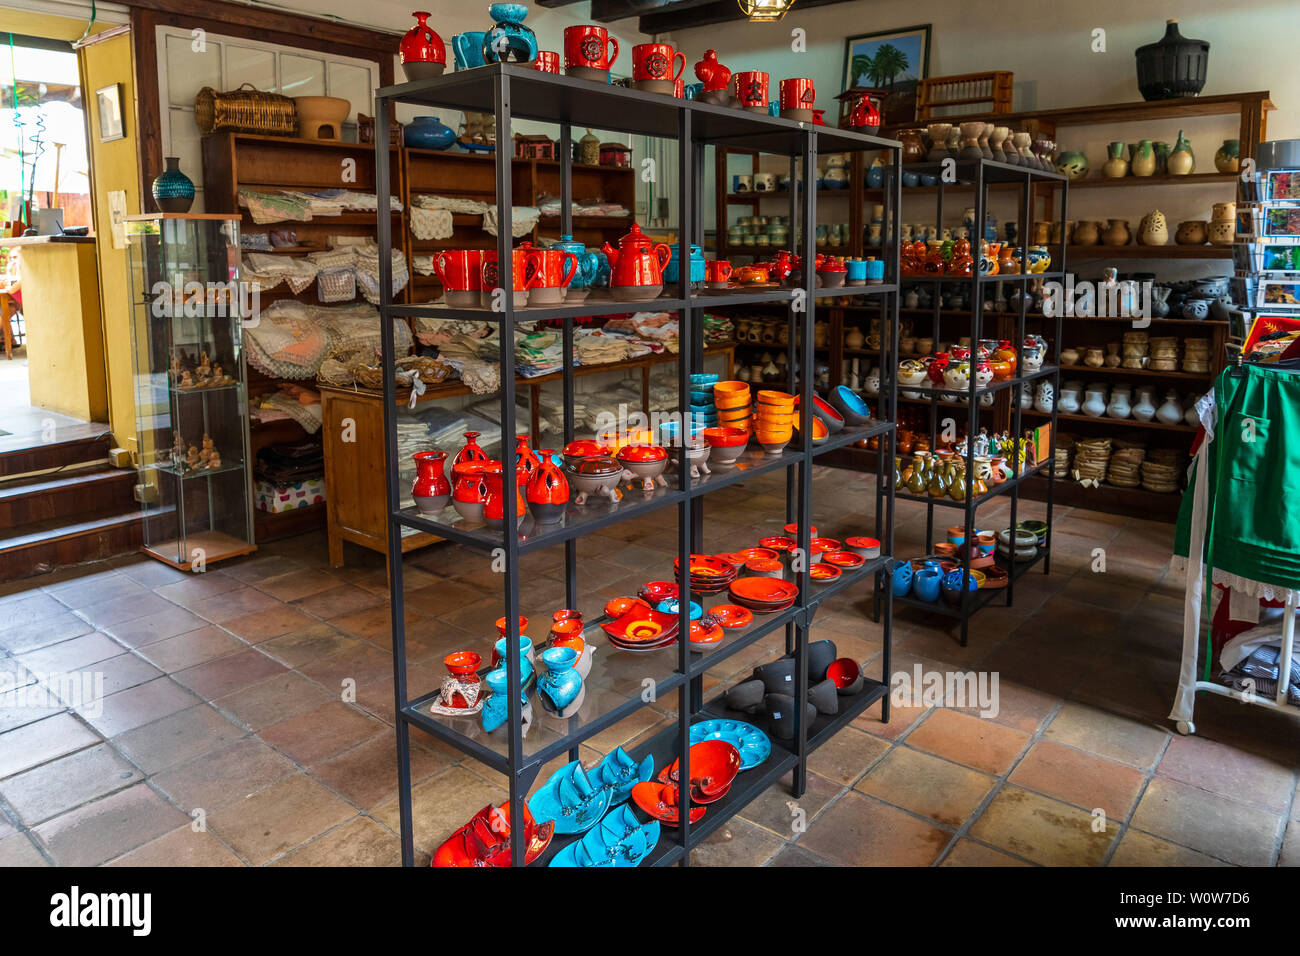 LA Orotava, Tenerife, Isole canarie, Spagna - Luglio 25, 2018: l'interno di un piccolo negozio di souvenir e regali fatti di ceramica e argilla. Foto Stock